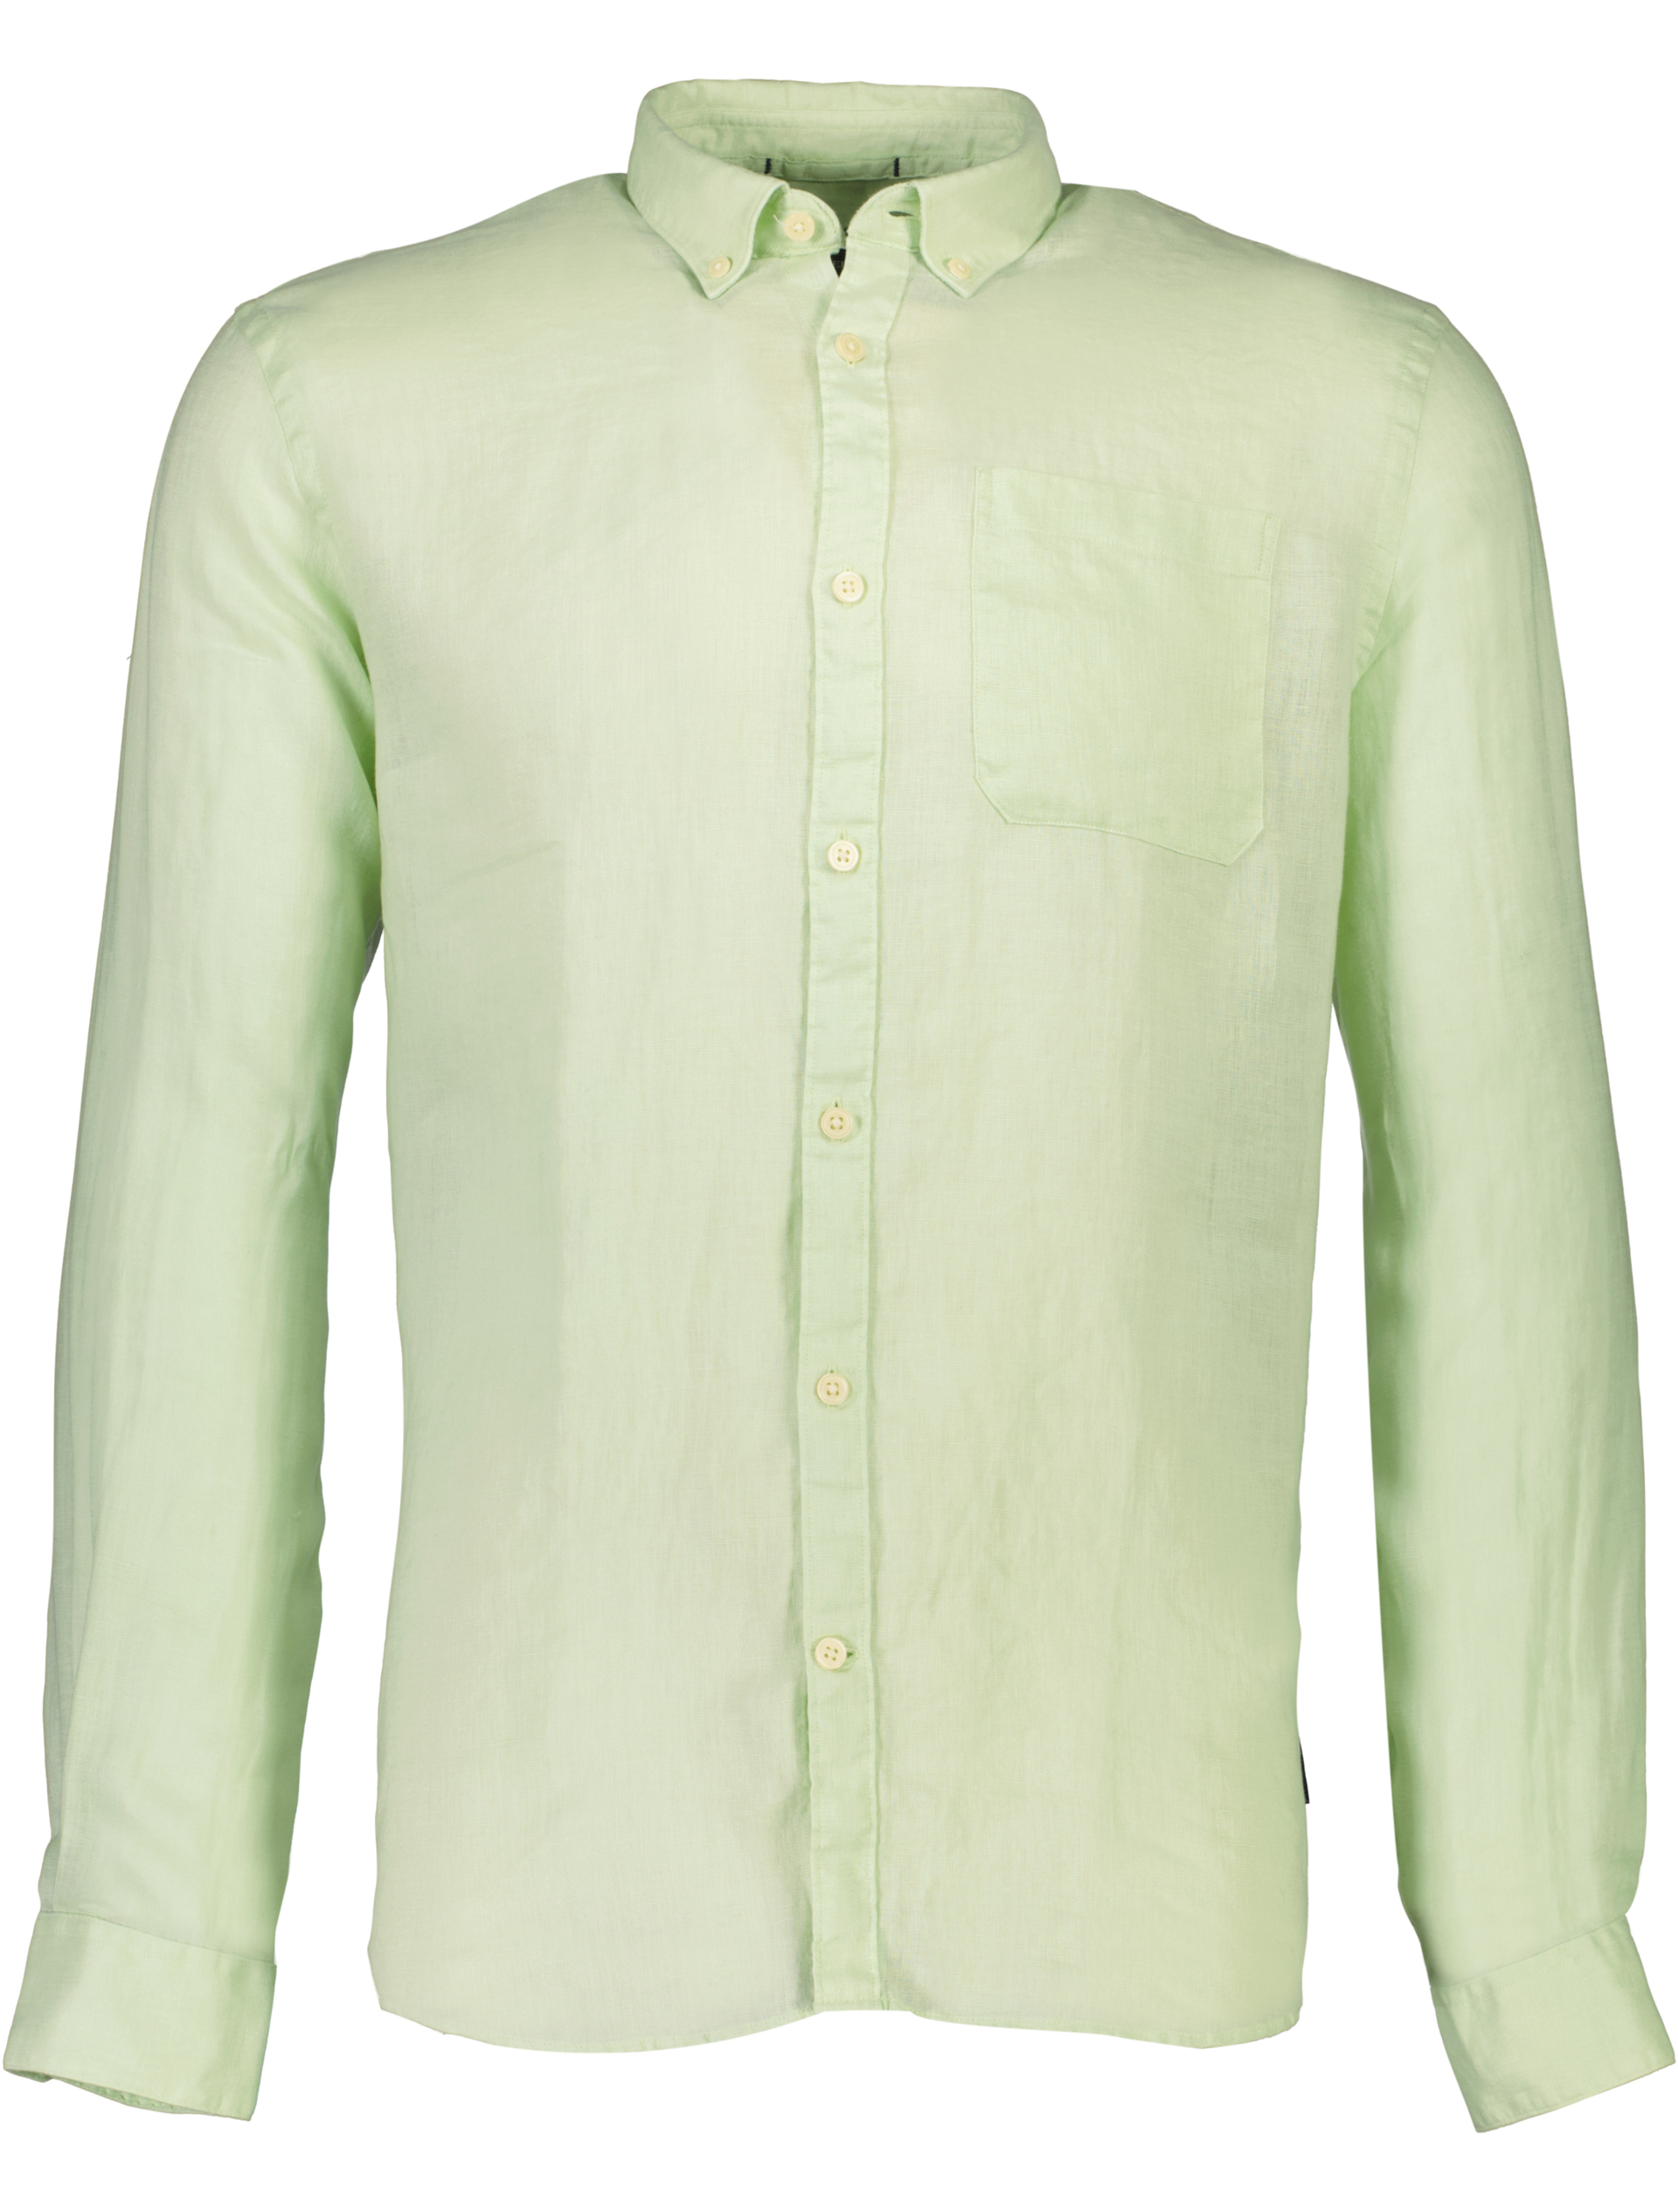 Lindbergh Leinenhemd grün / mint green